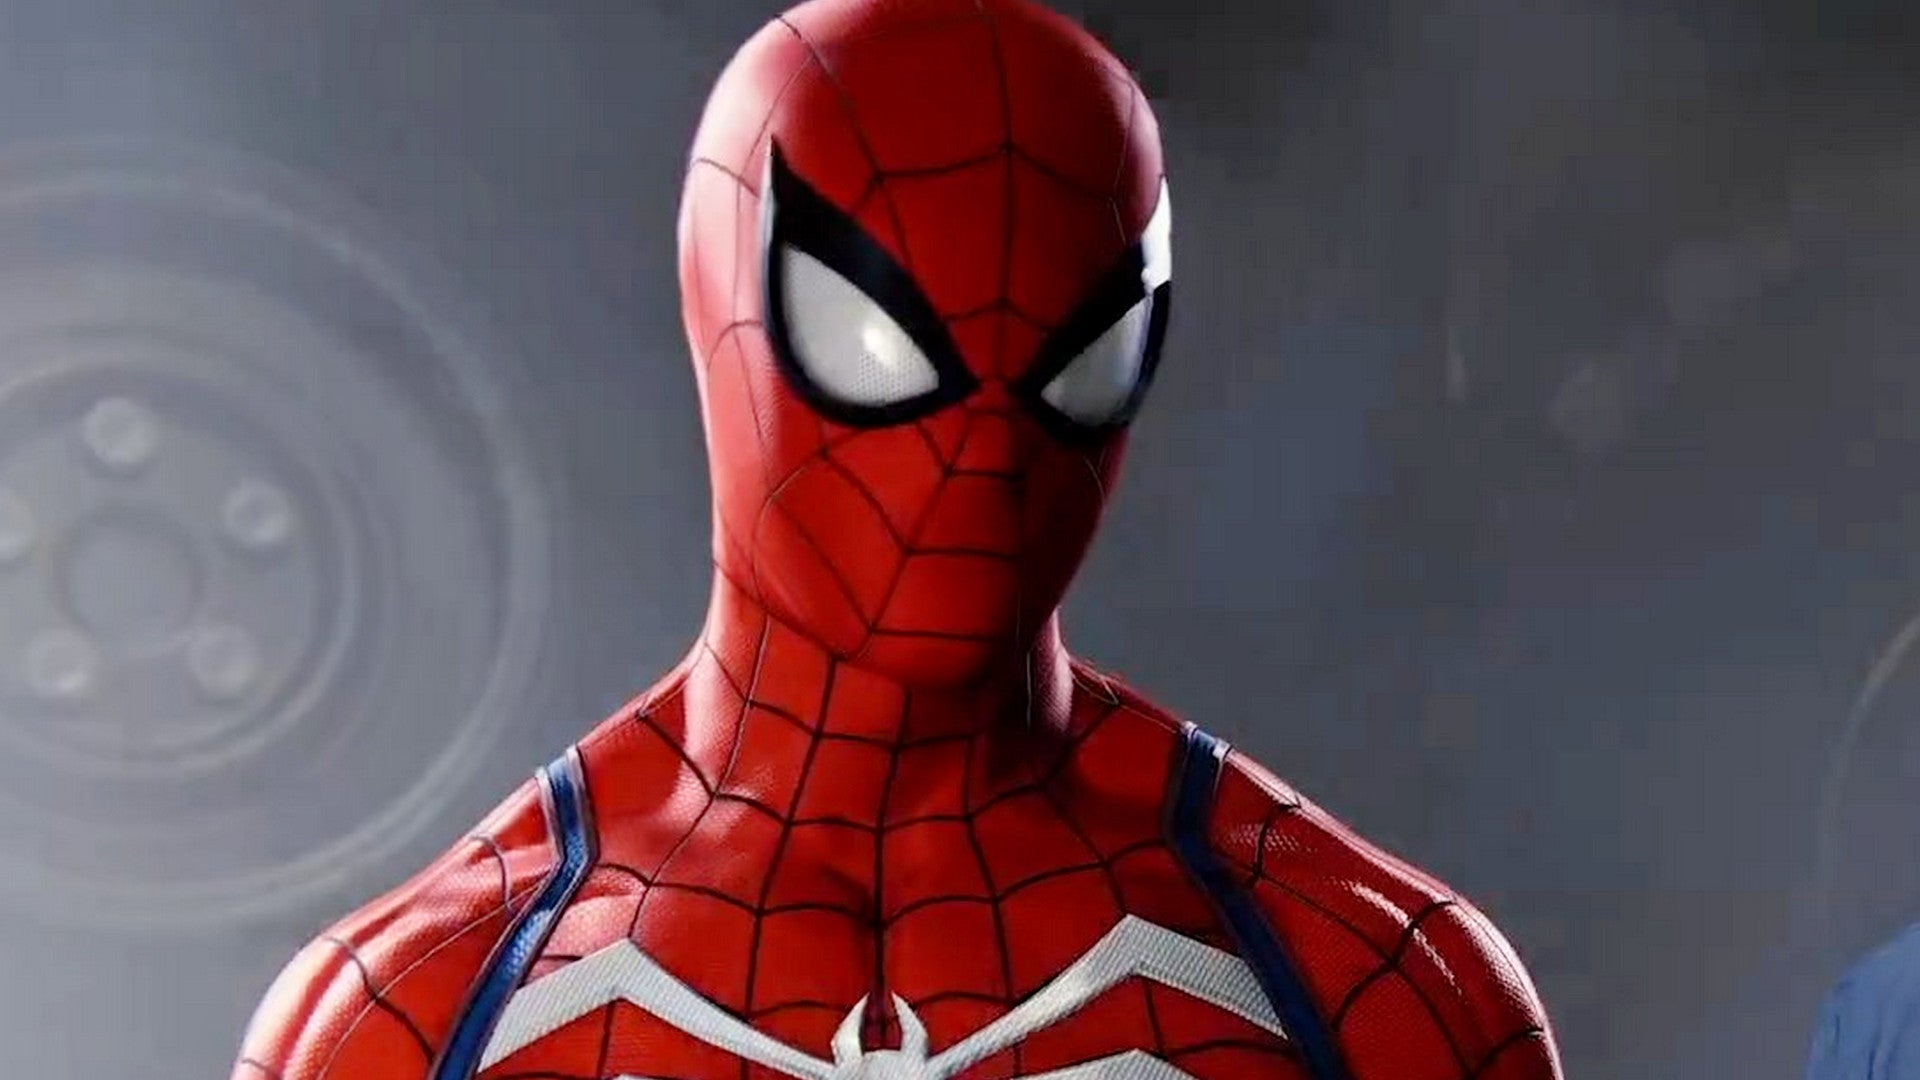 Bilder zu Marvel's Spider-Man Remastered und Miles Morales für PC angekündigt